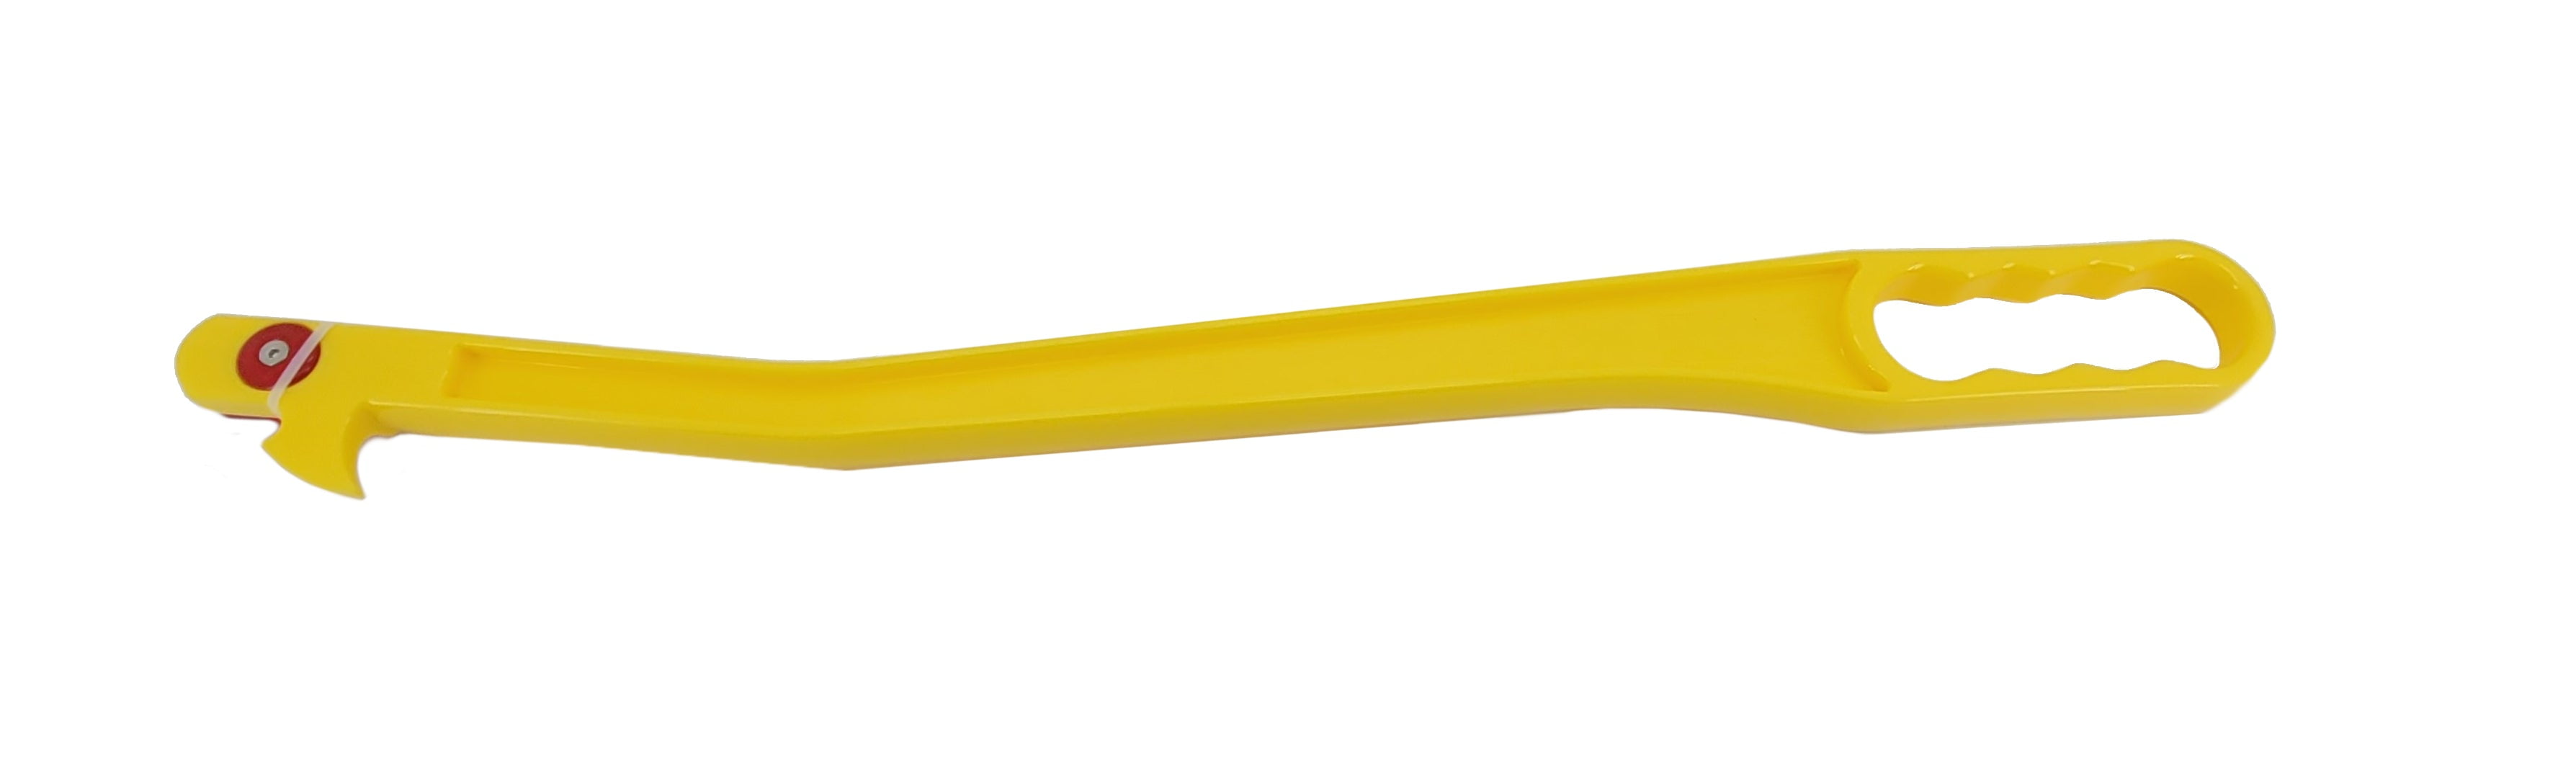 Hayknife- Netwrap & Twine Cutter (Yellow)